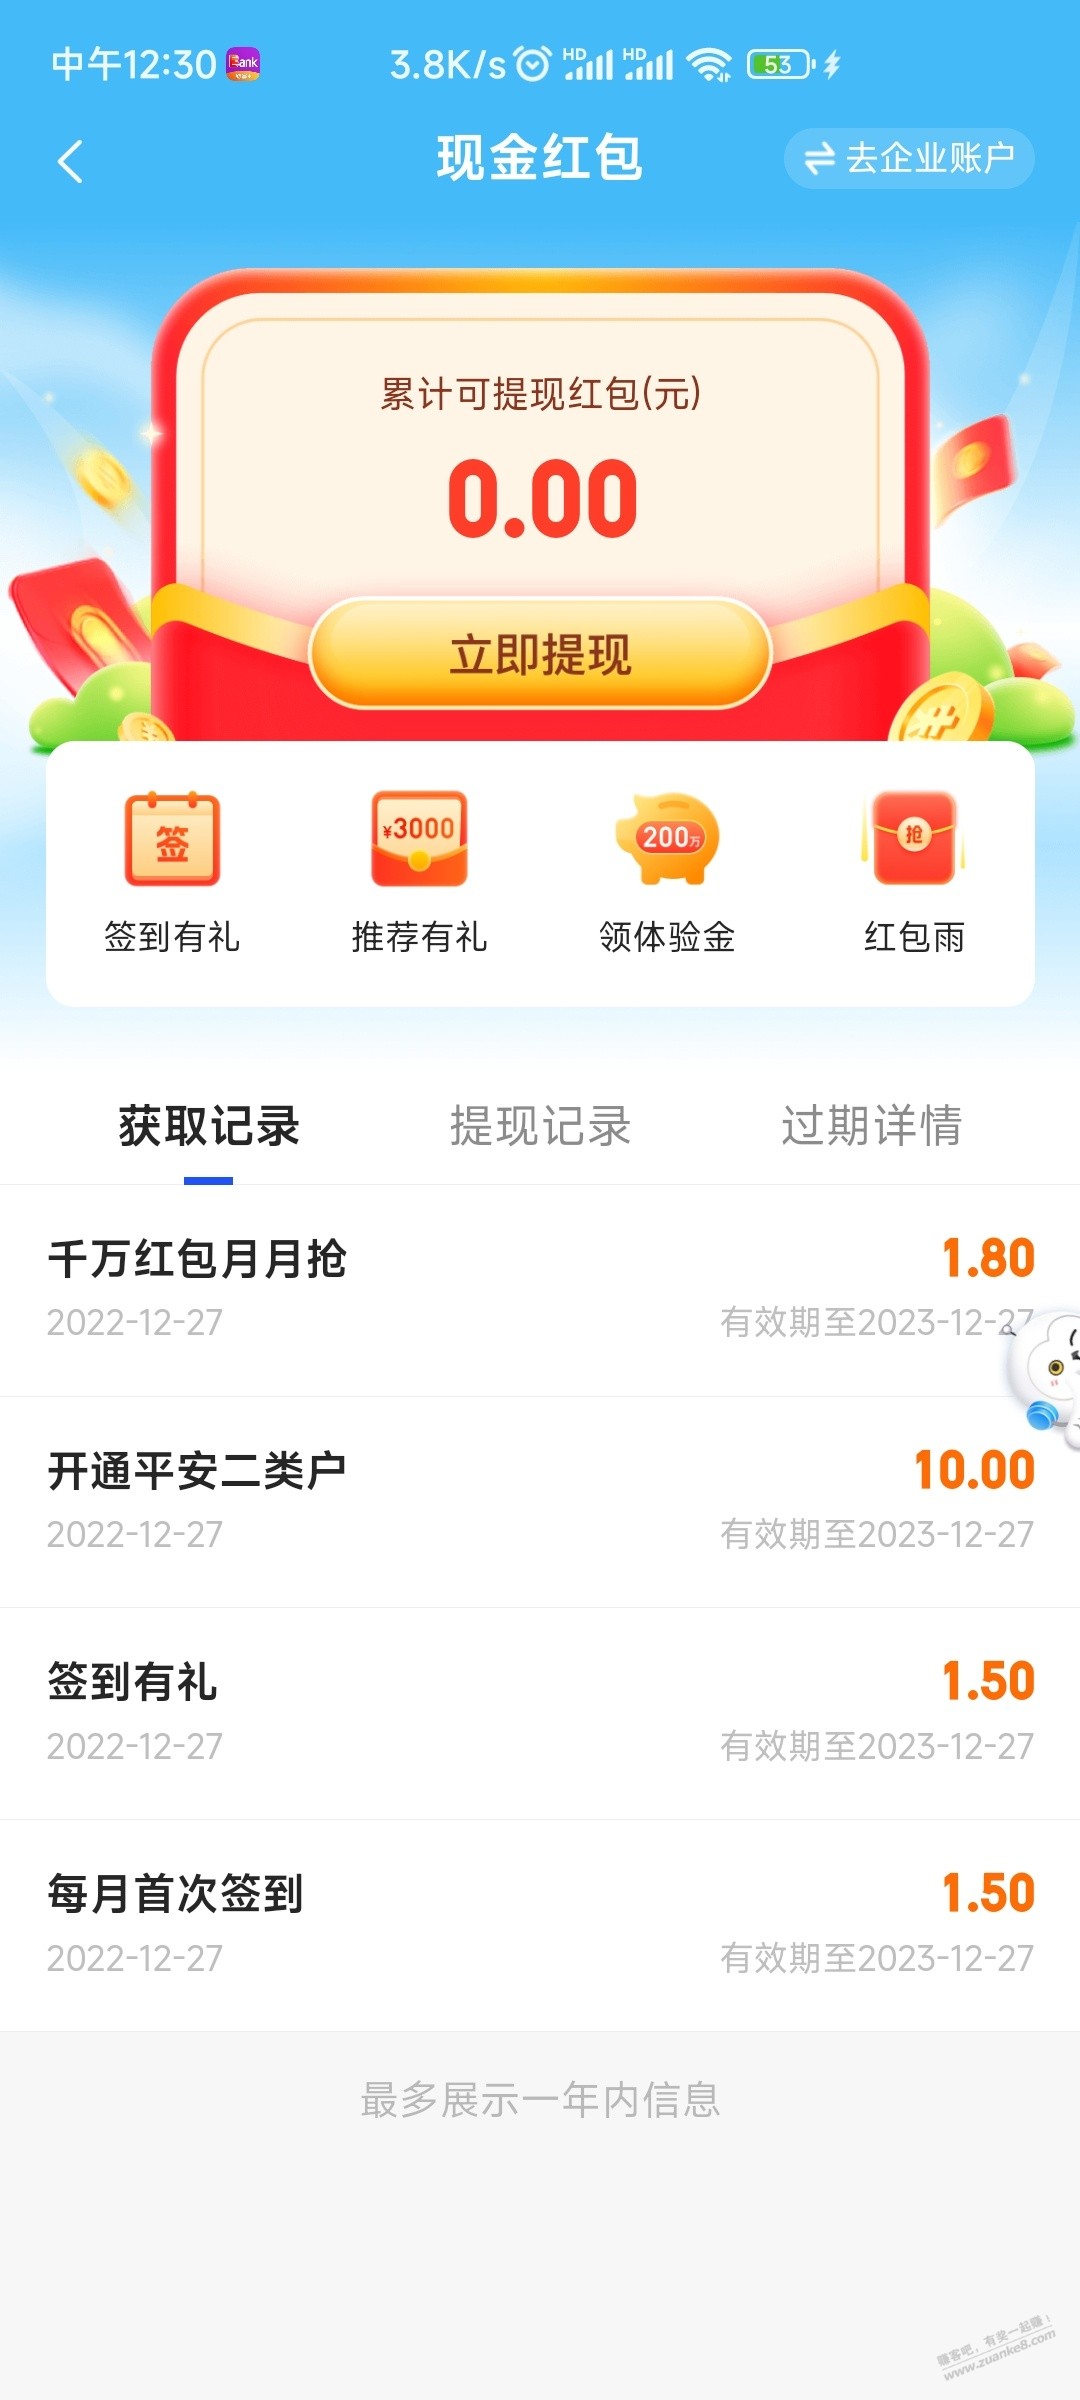 17.5现金红包-惠小助(52huixz.com)